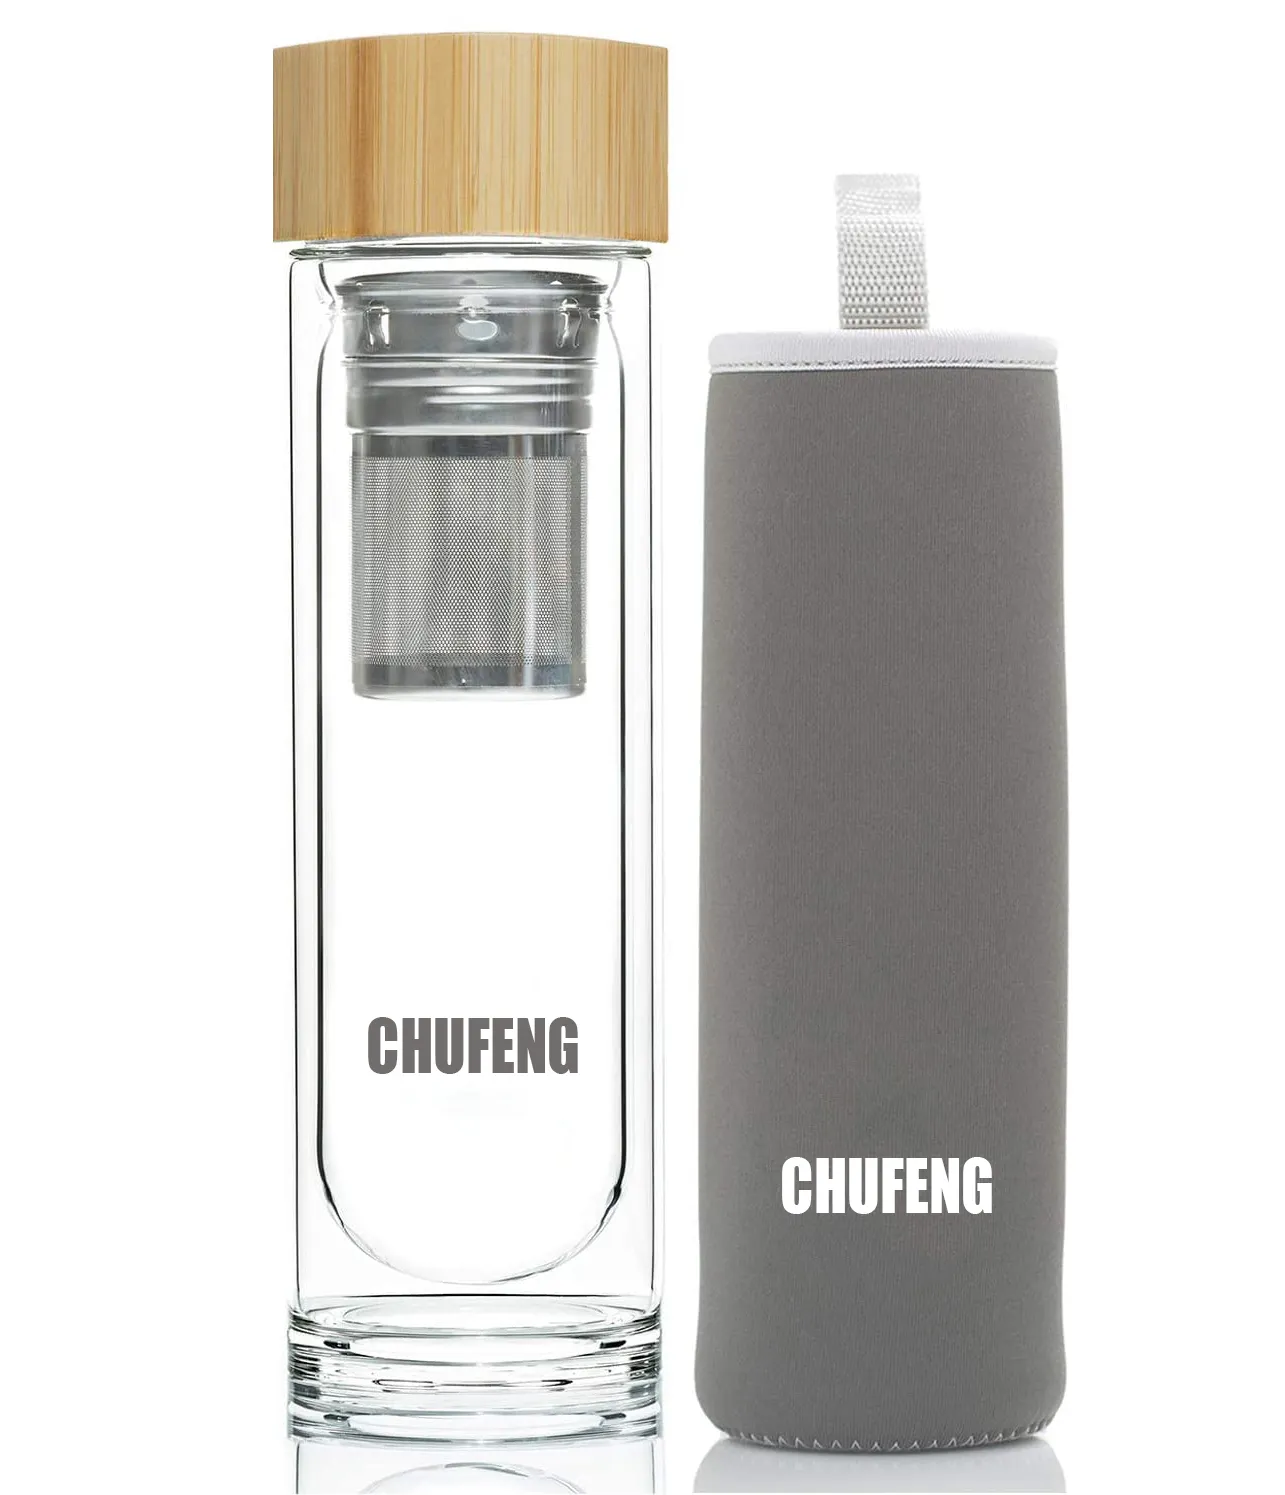 زجاجة مياه مخصصة عالية الجودة من CHUFENG للشاي زجاجة زجاج مزدوجة الجدار من البورسليكات مع فلتر وغطاء خشبي